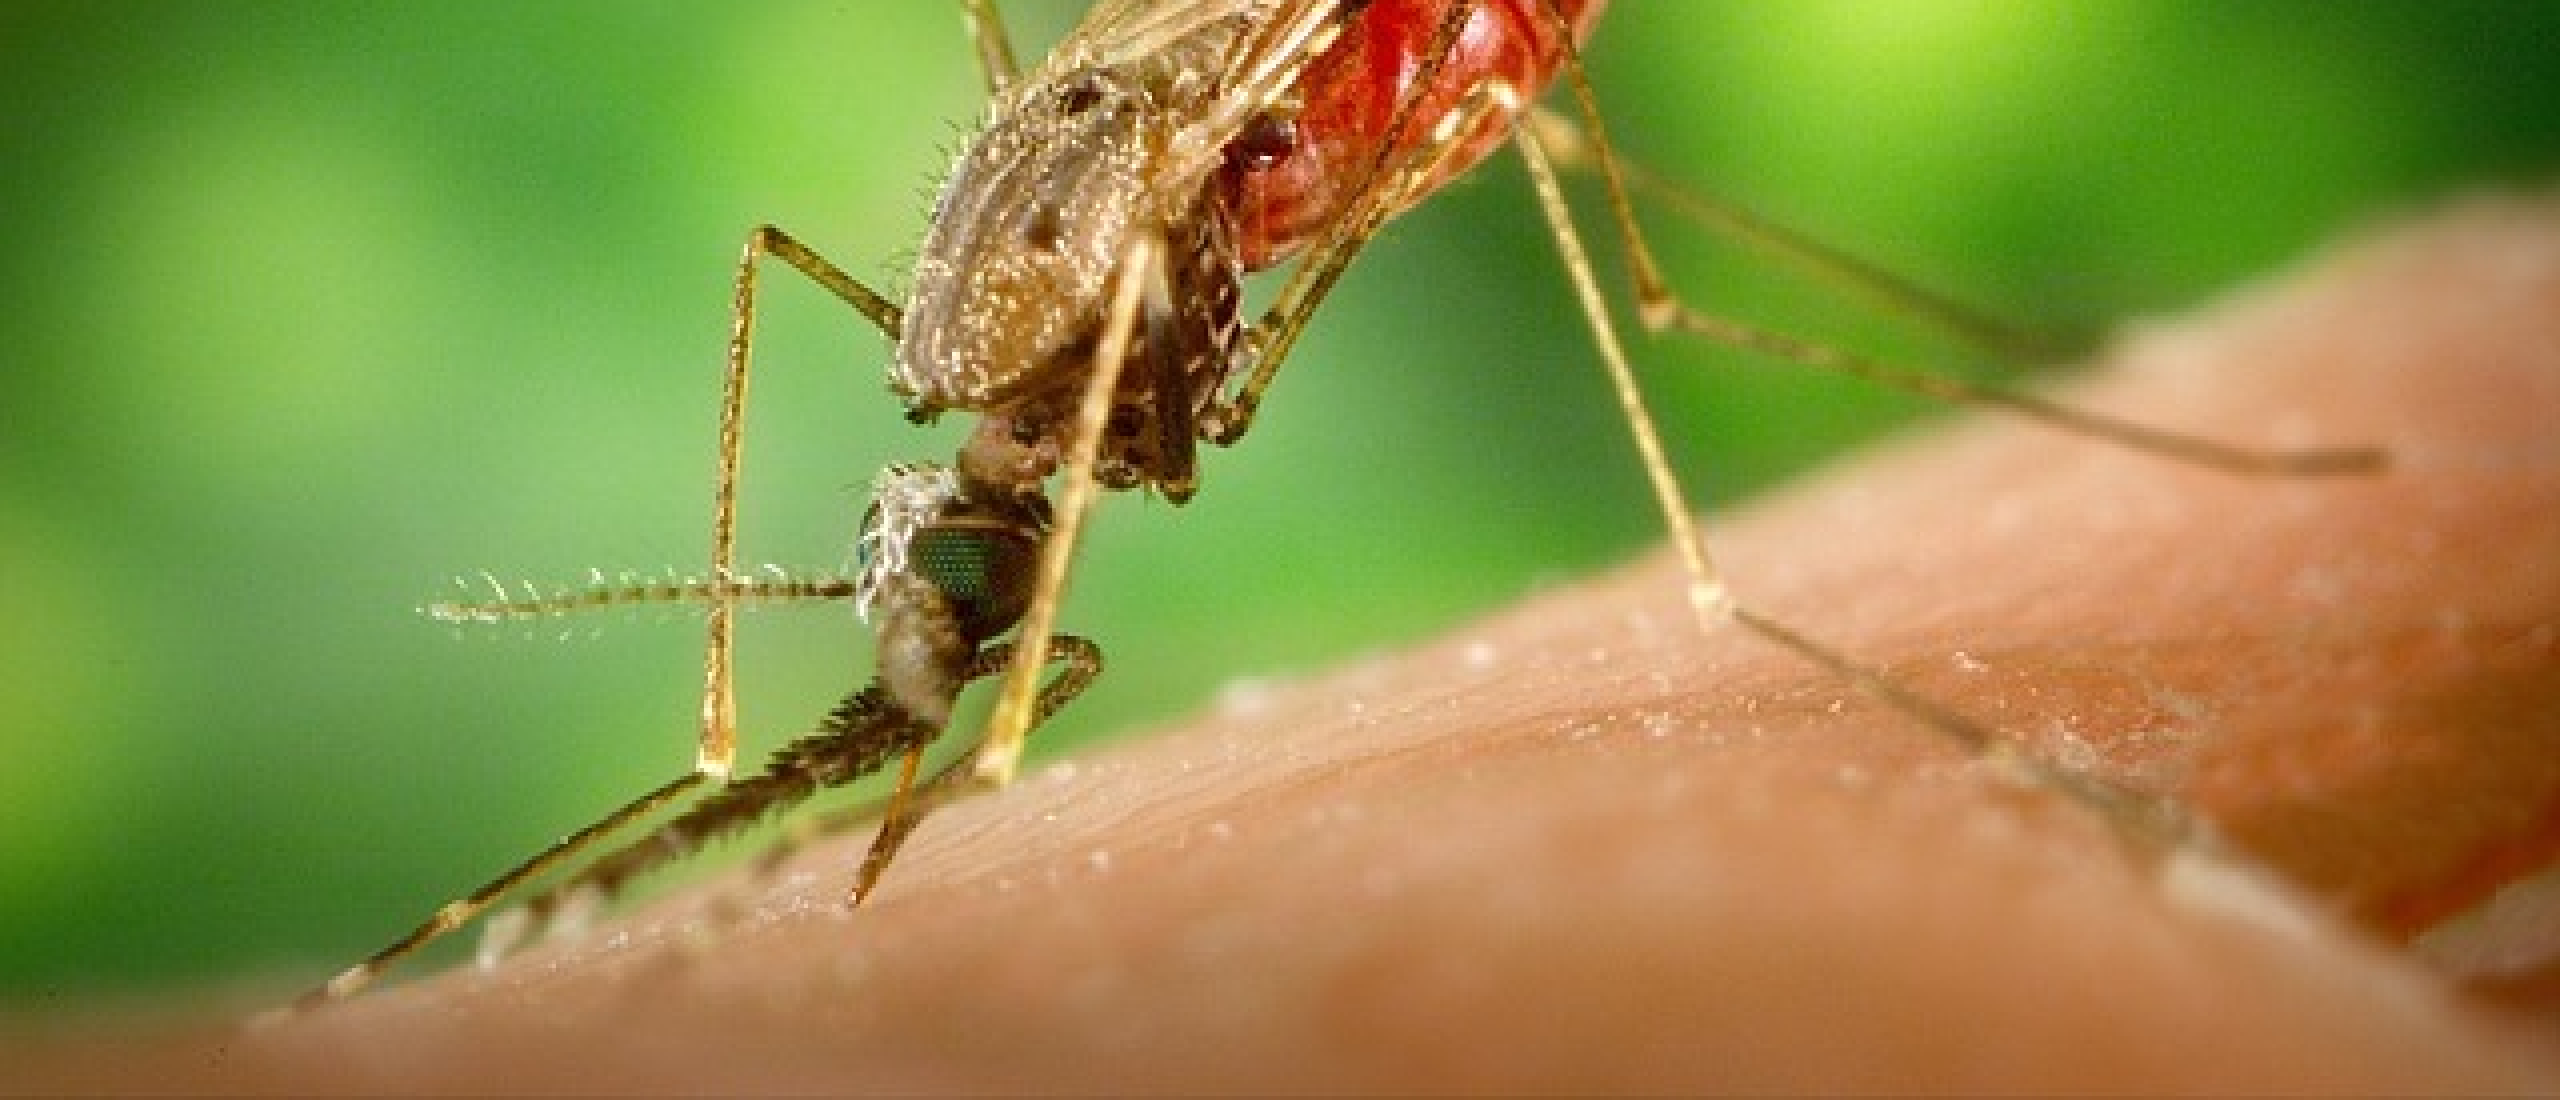 Malaria en jonge kinderen